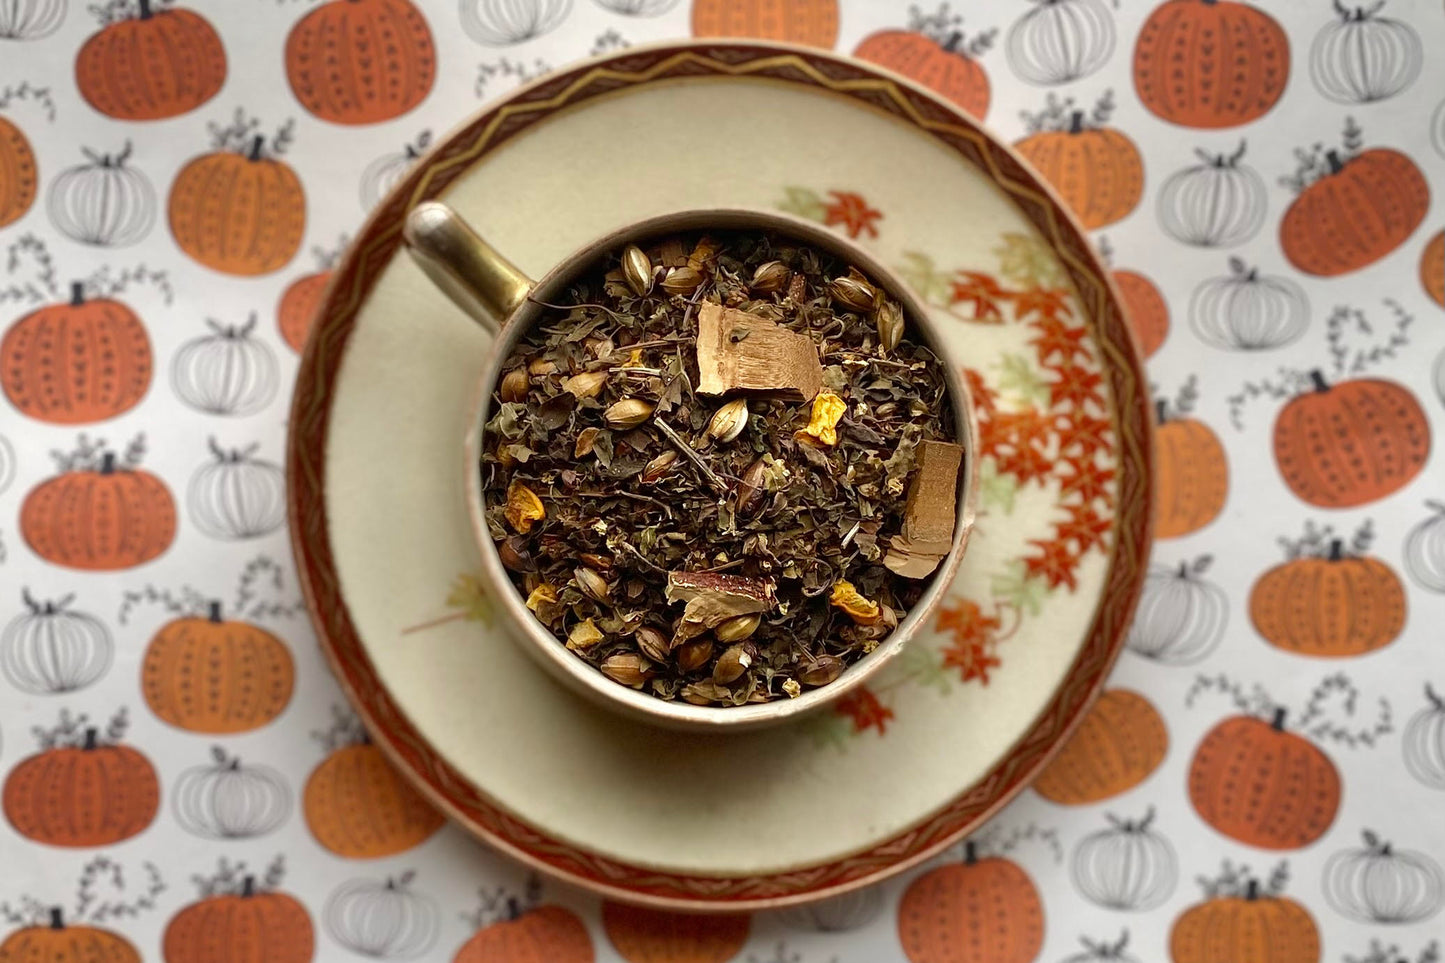 teacup full of leaf, grain, mushroom and squash